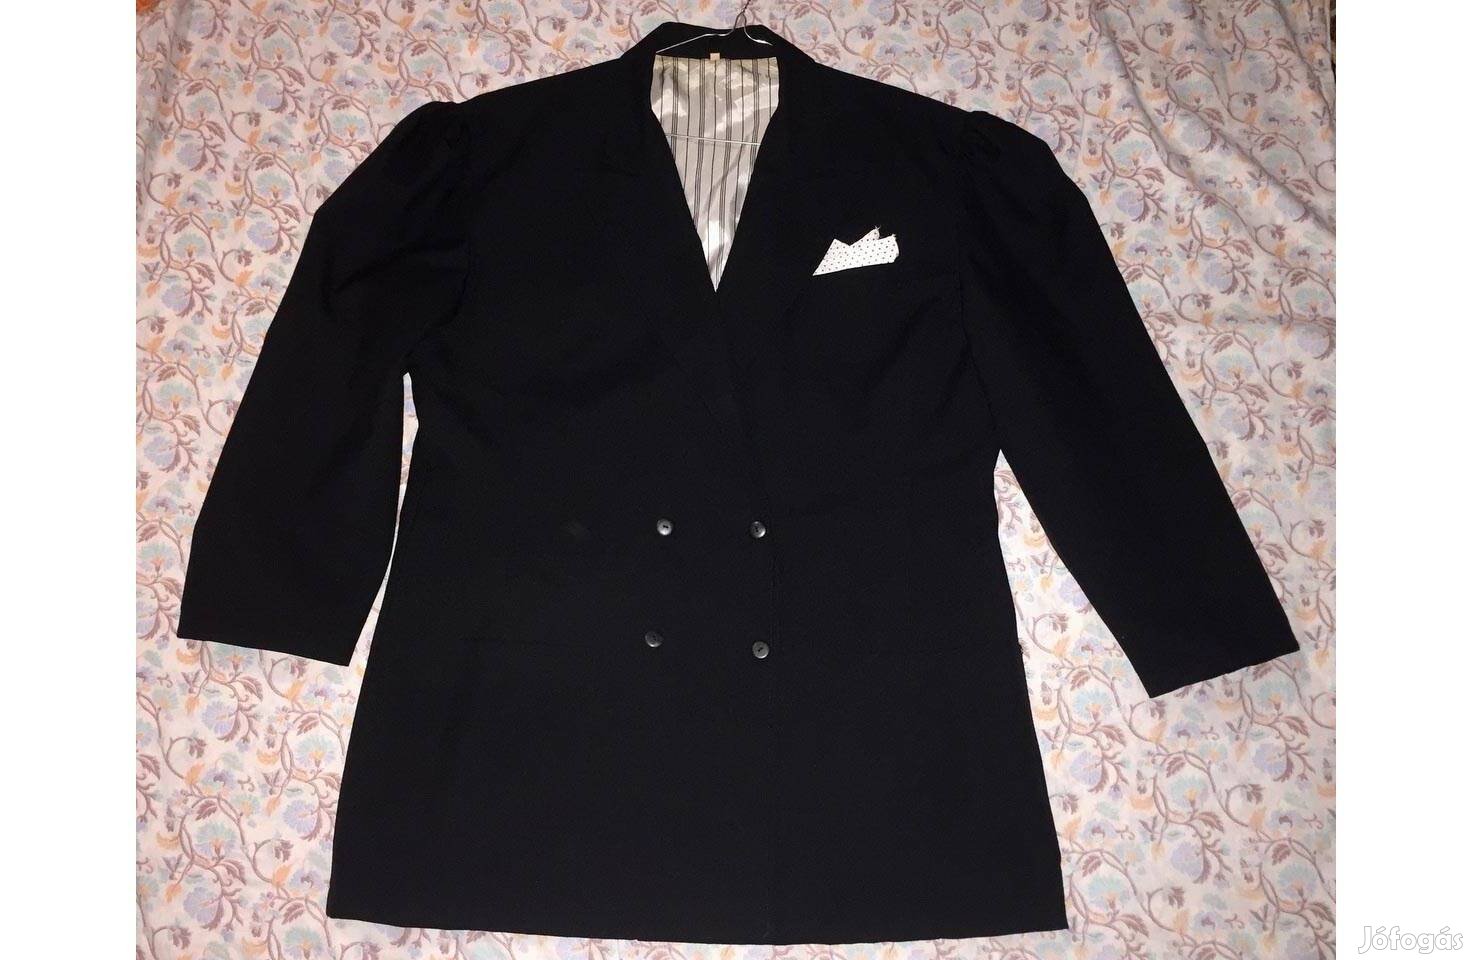 Fekete női ünnepi blézer kabát dzseki zakó felső 44-es dísz zsebkendő